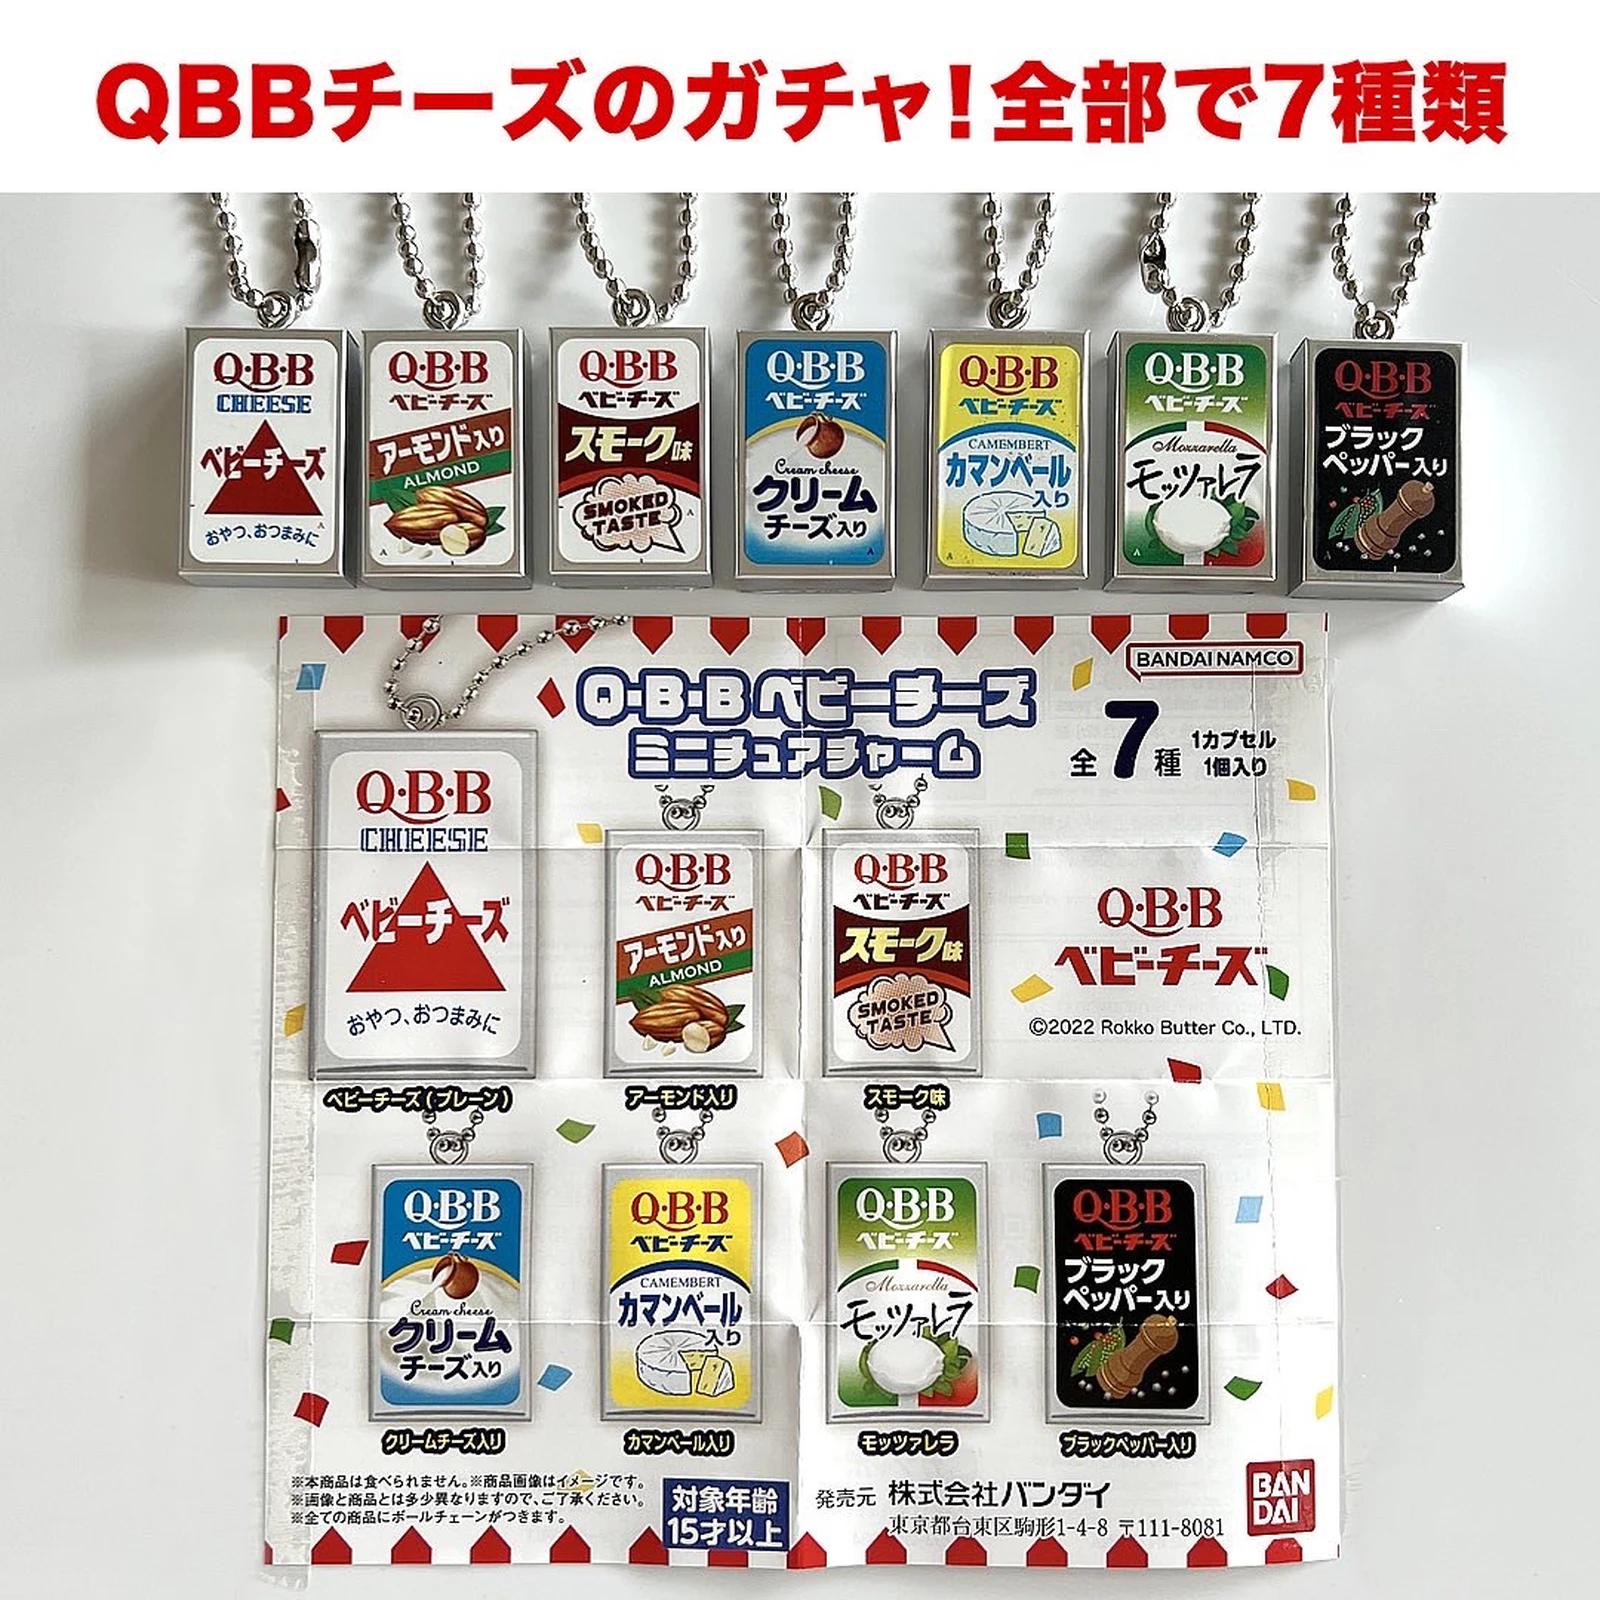 日本全国送料無料 ベビーチーズ 全7種 Q B B ガチャガチャ ミニチュアチャーム その他